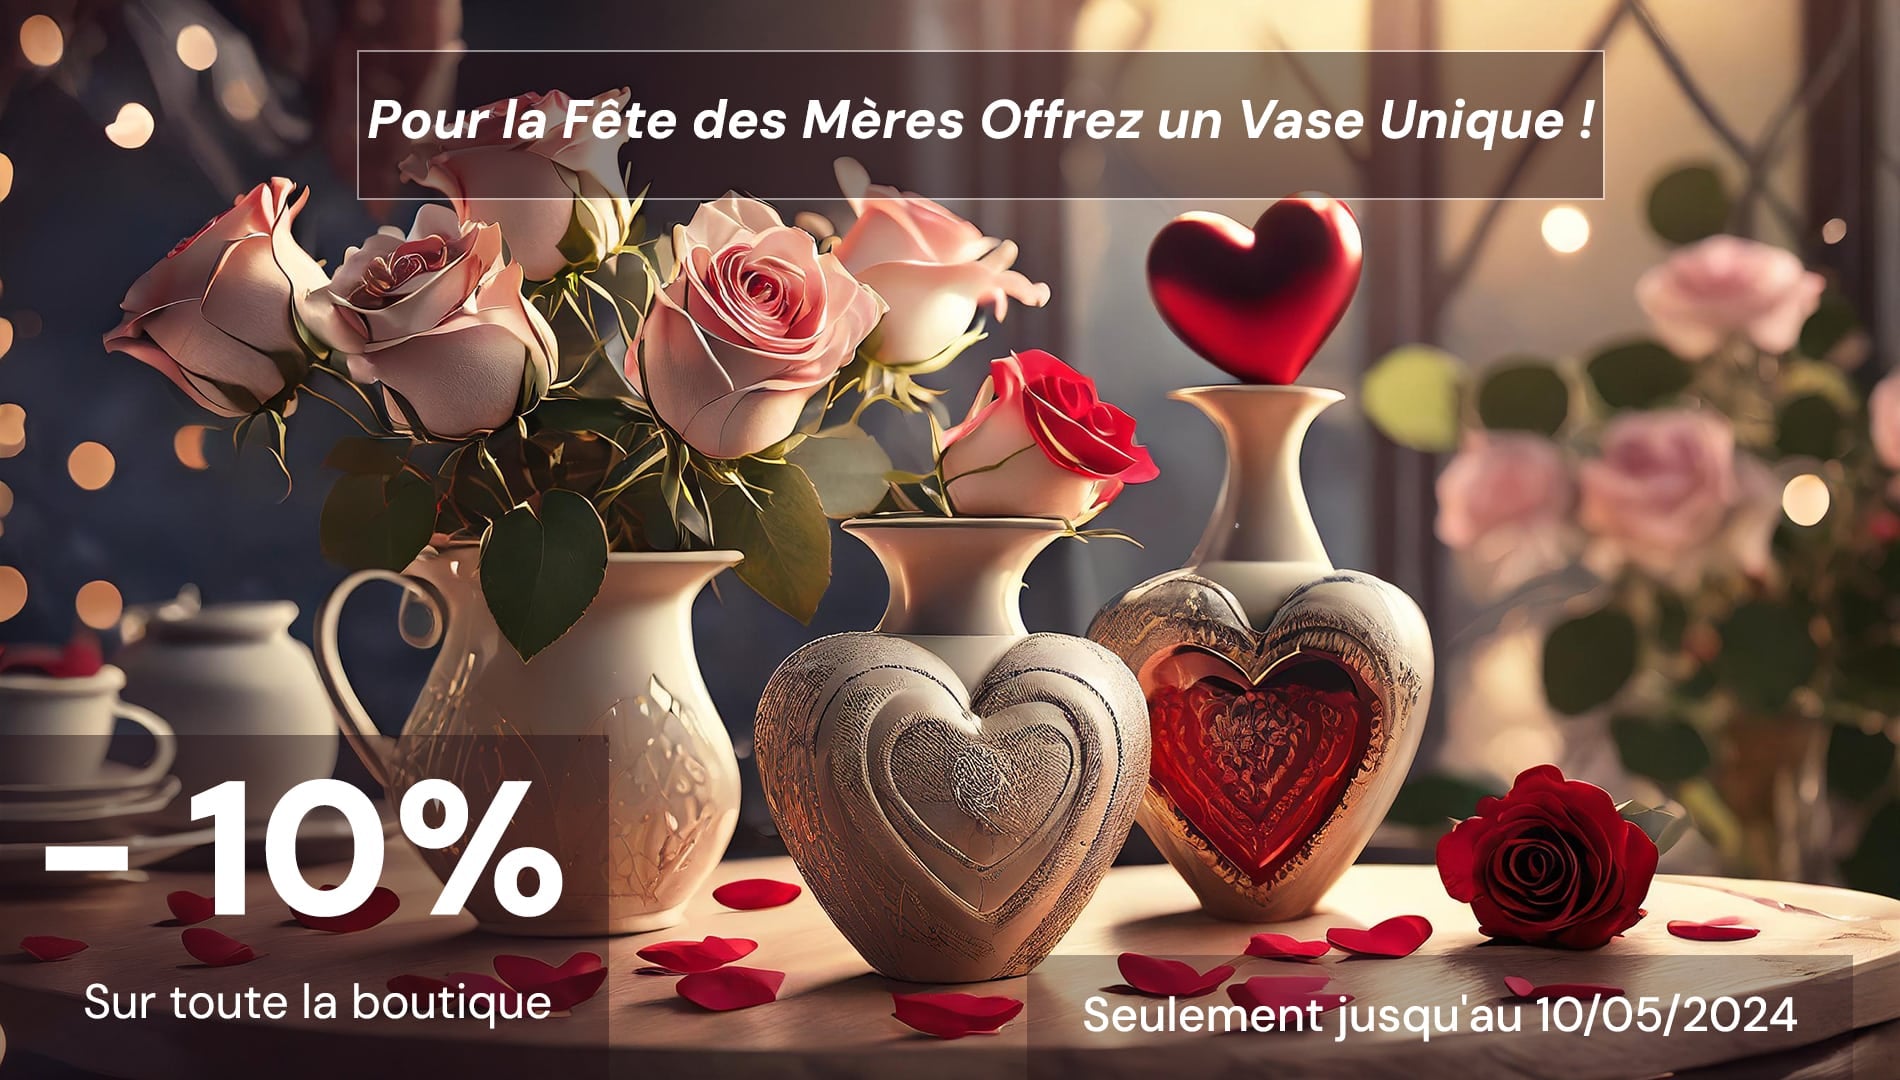 Promotion spéciale pour la fêtes des mères -10% sur toute la boutique jusqu'au 10/05/2024 Vase Cute